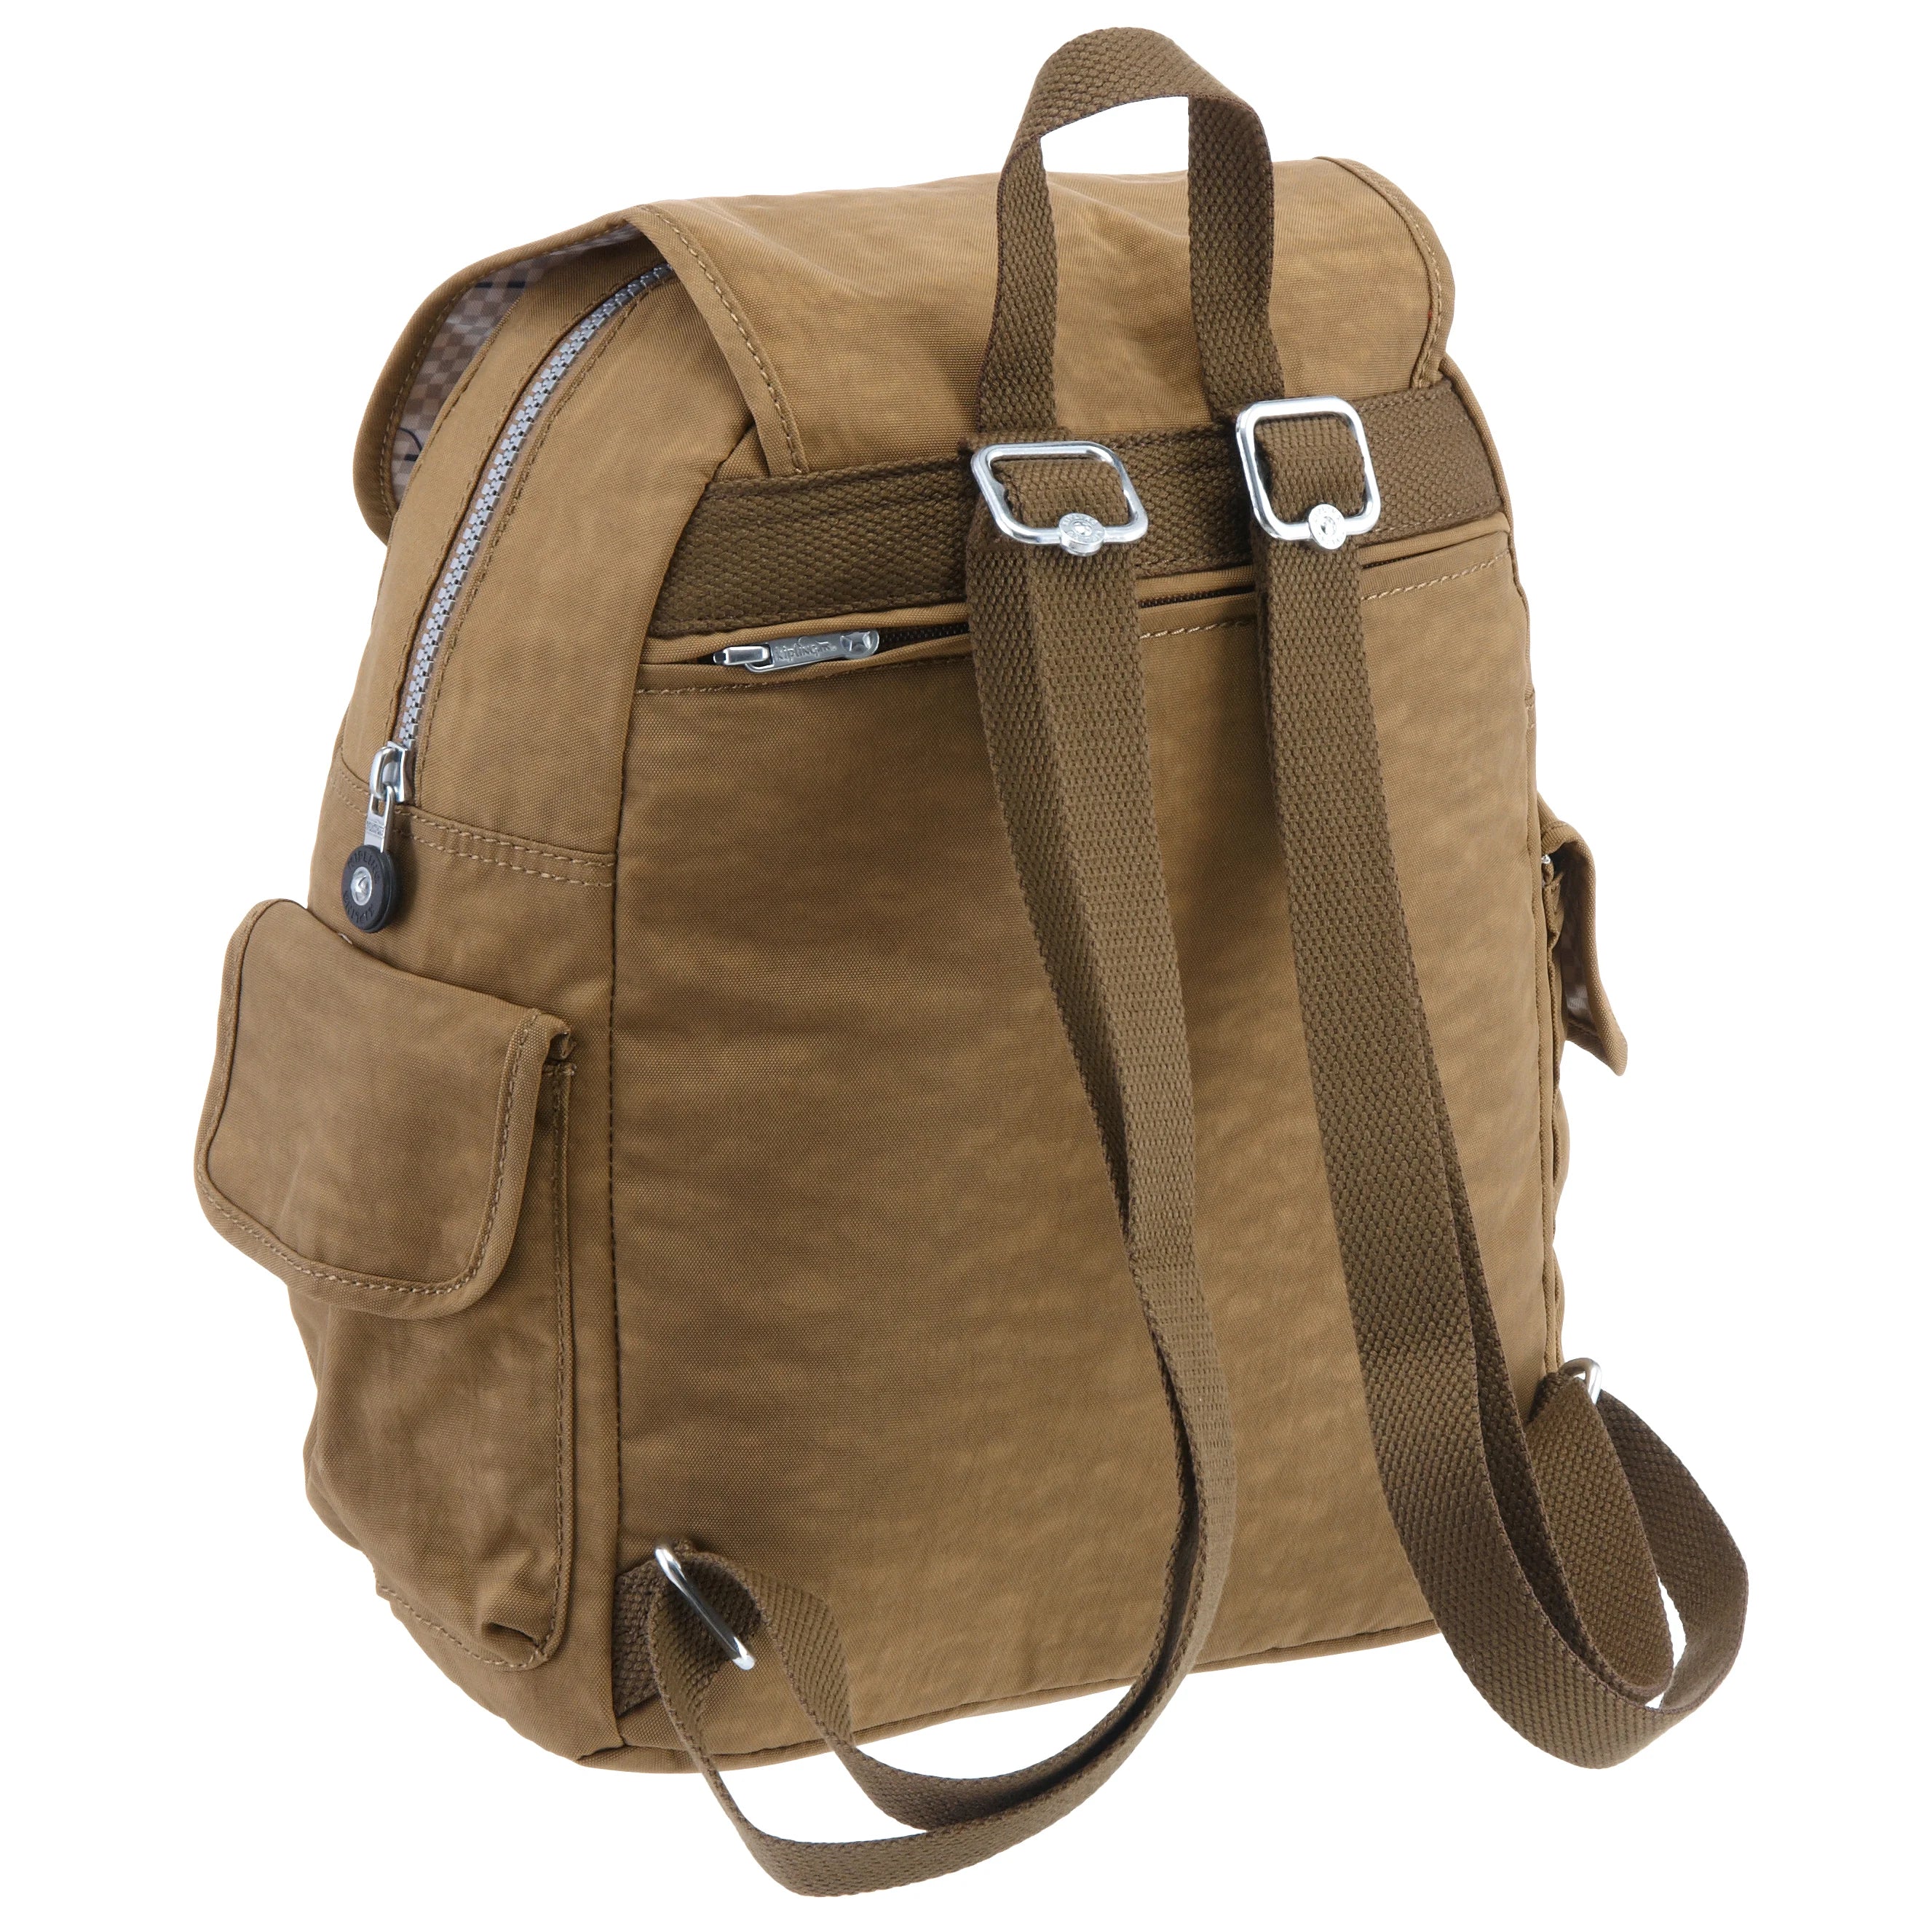 Kipling Basic City Pack S Backpack 33 cm - Black